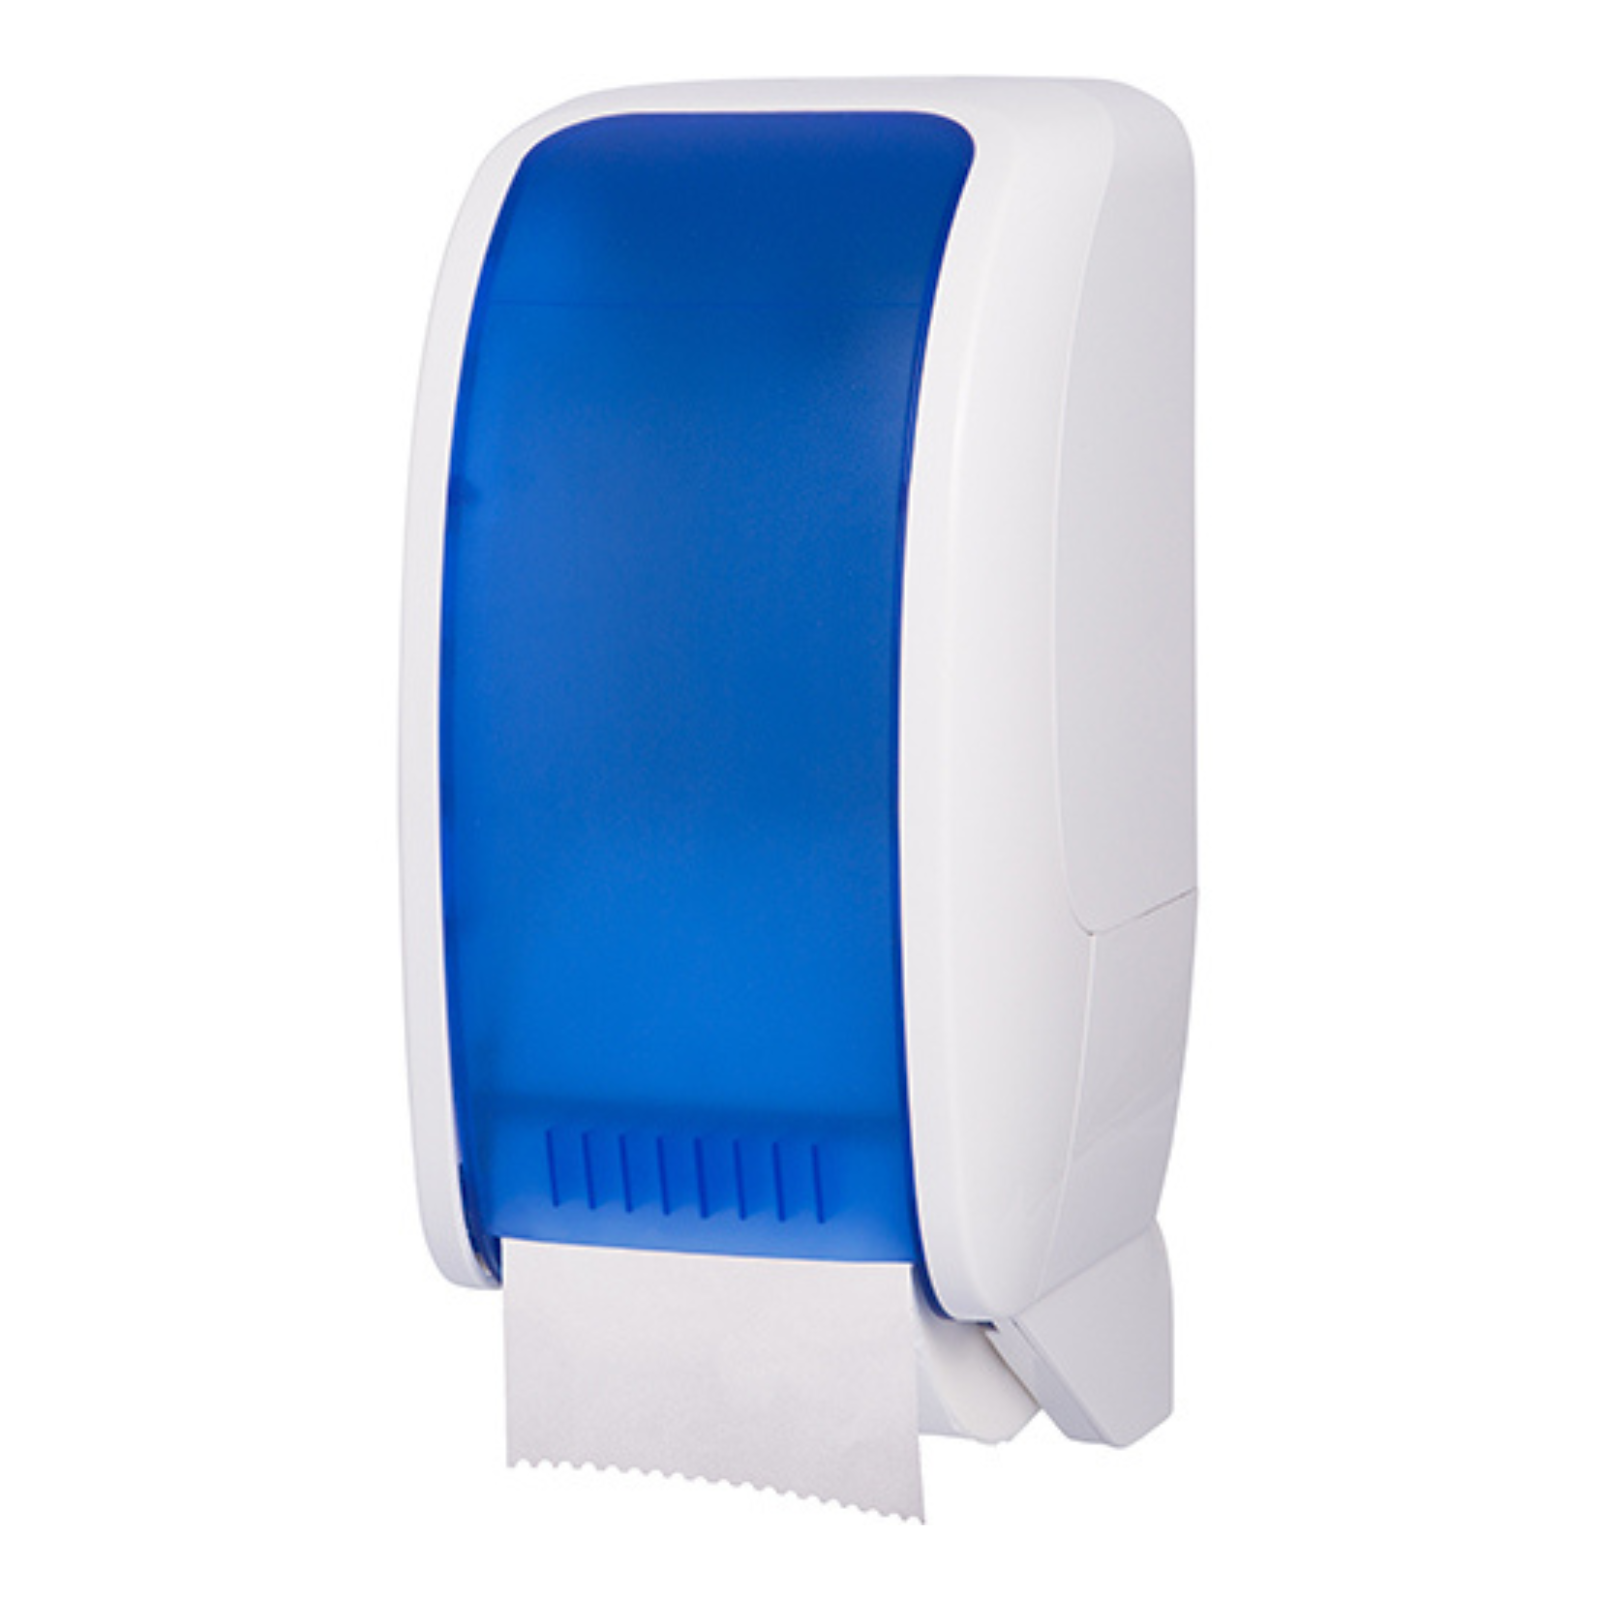 Pura - Toilet Roll Dispenser - White/Blue